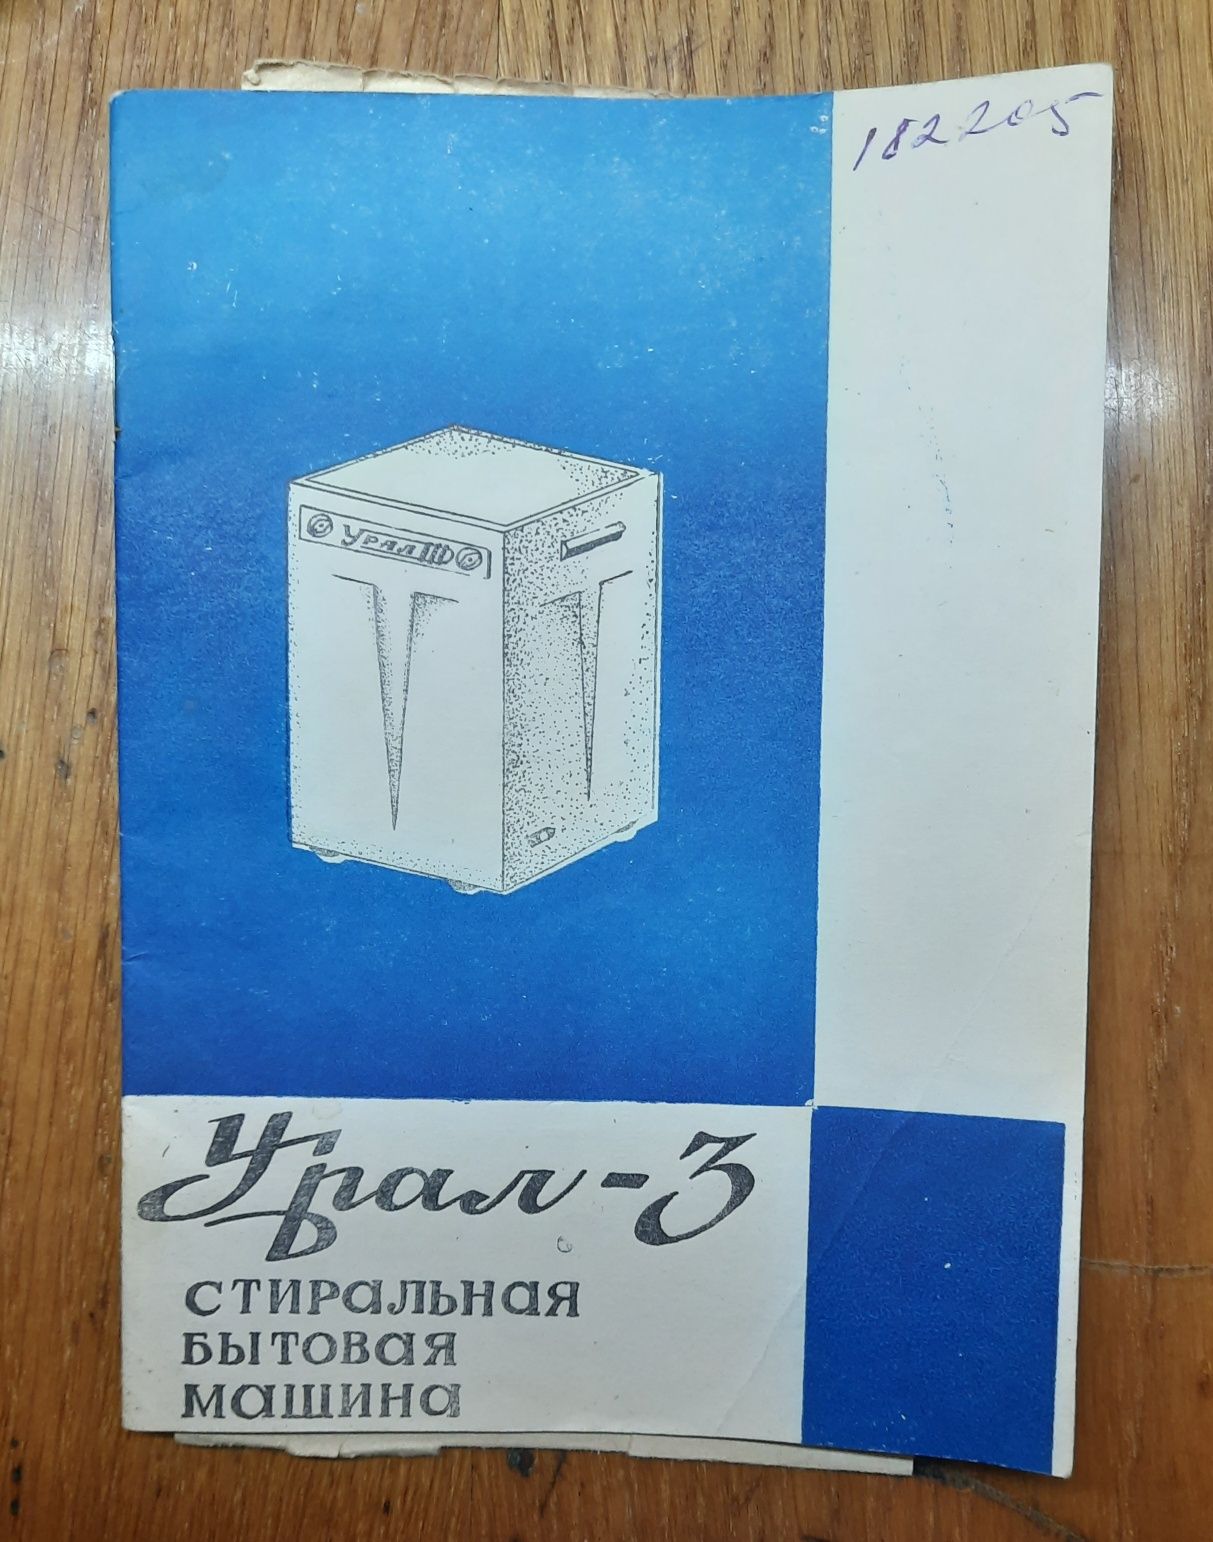 Паспорт ГЗМ-043 и стиралка Урал-3